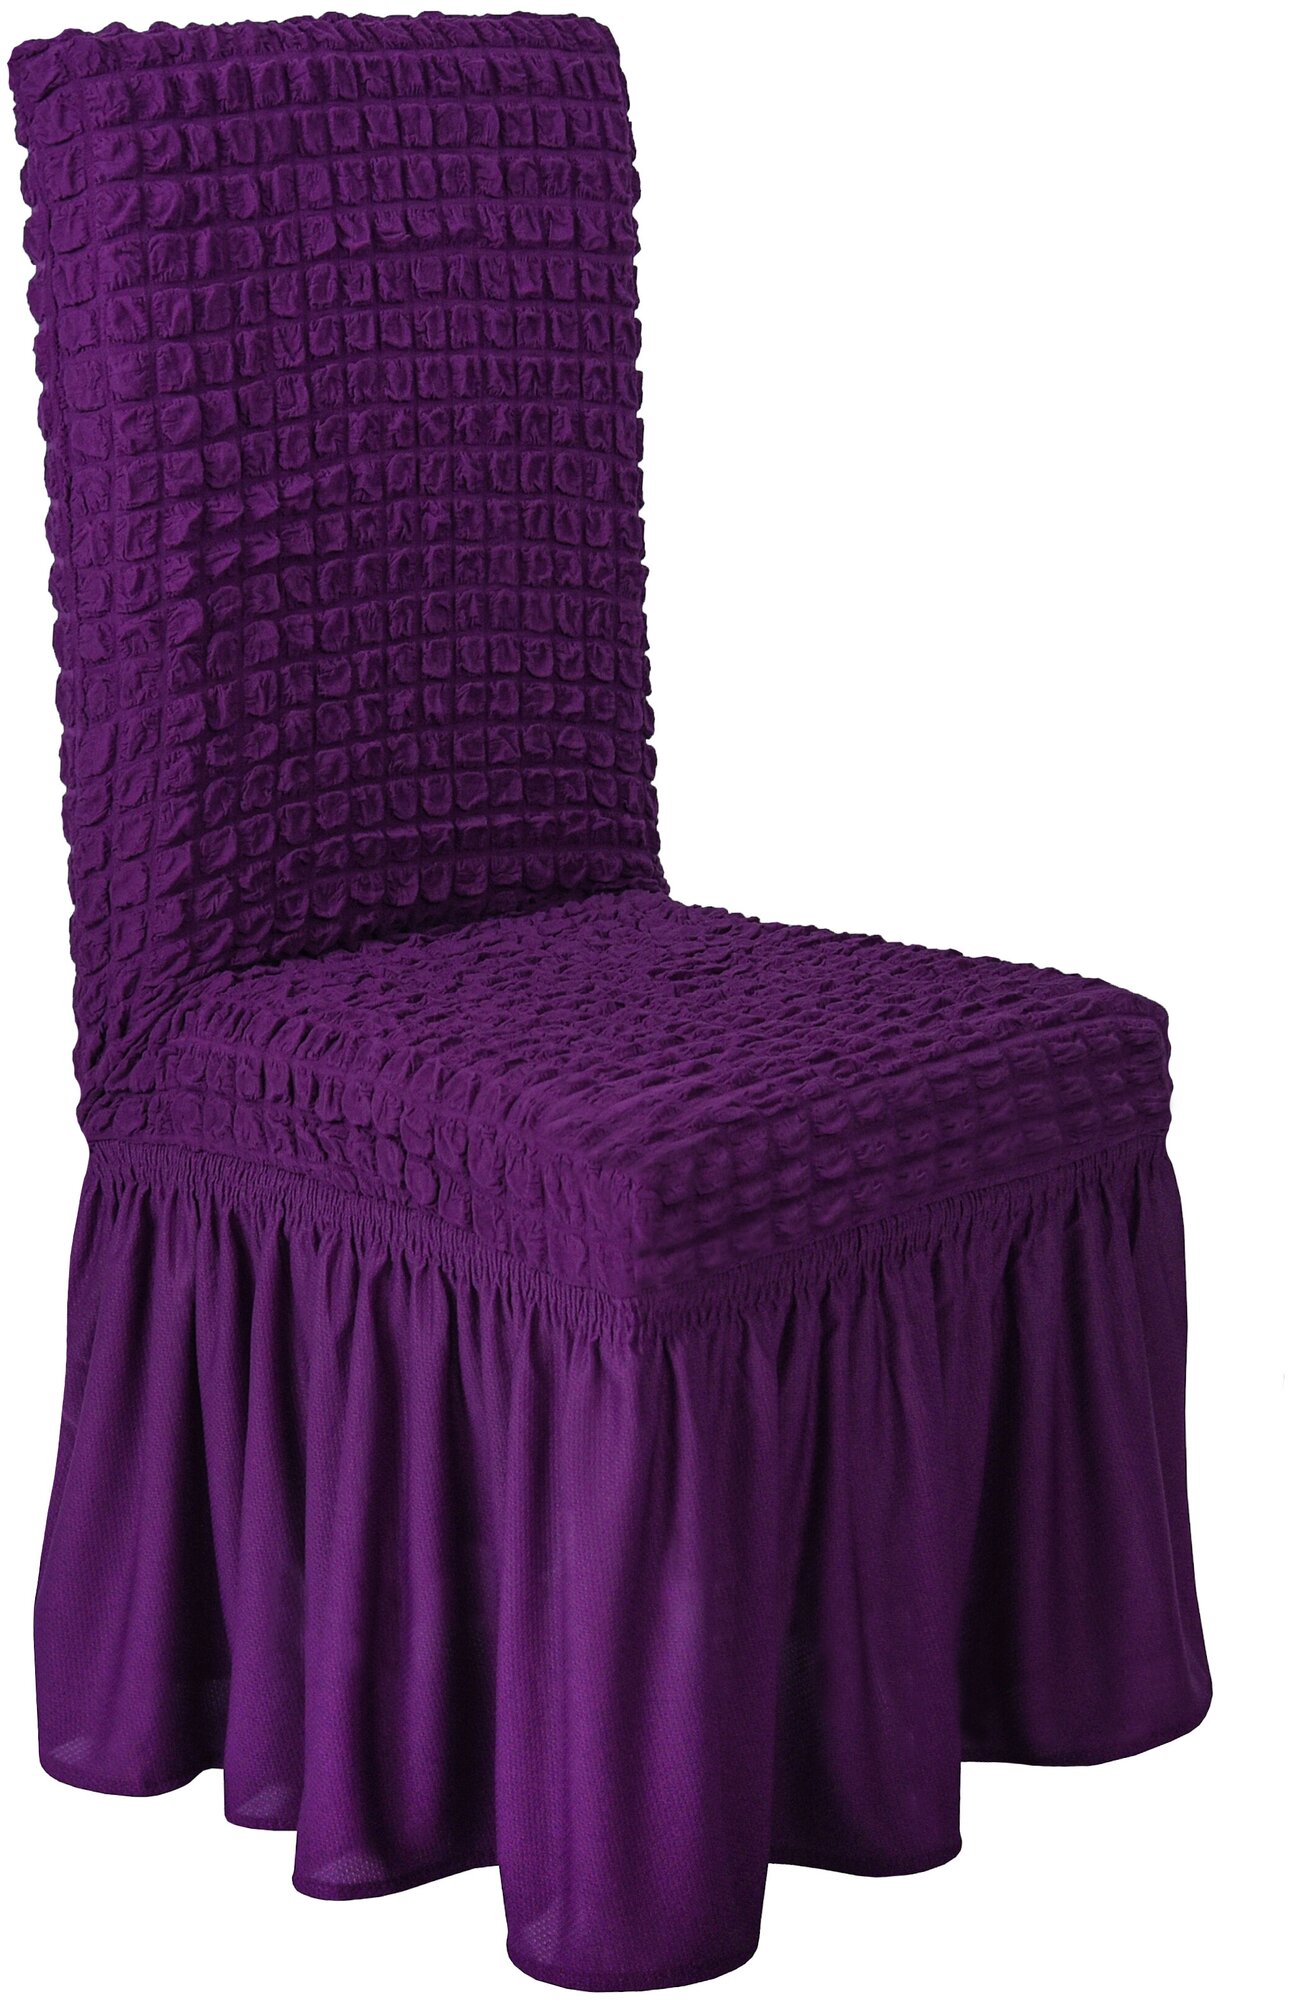 Чехол Venera на стул со спинкой однотонный, цвет Фиолетовый